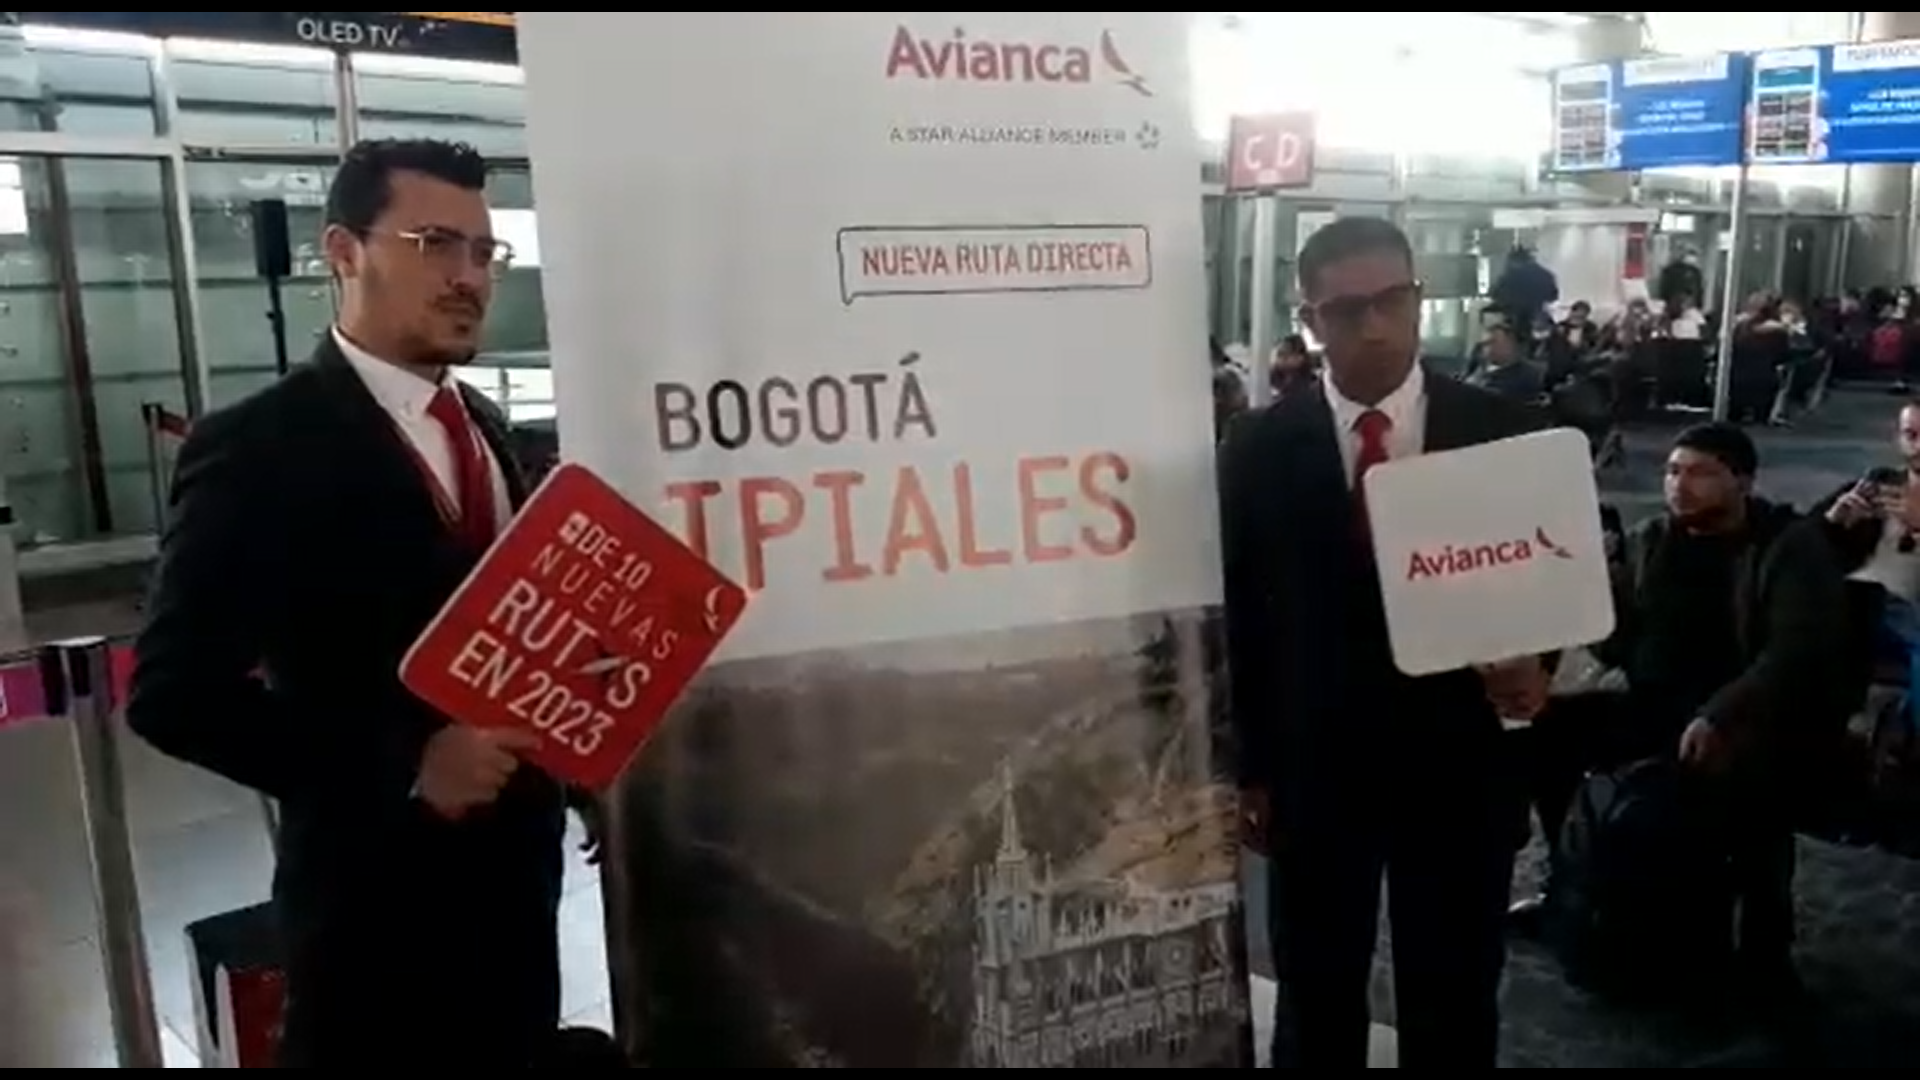 Avianca anuncia una nueva ruta con conexión directa de Bogotá a Ipiales